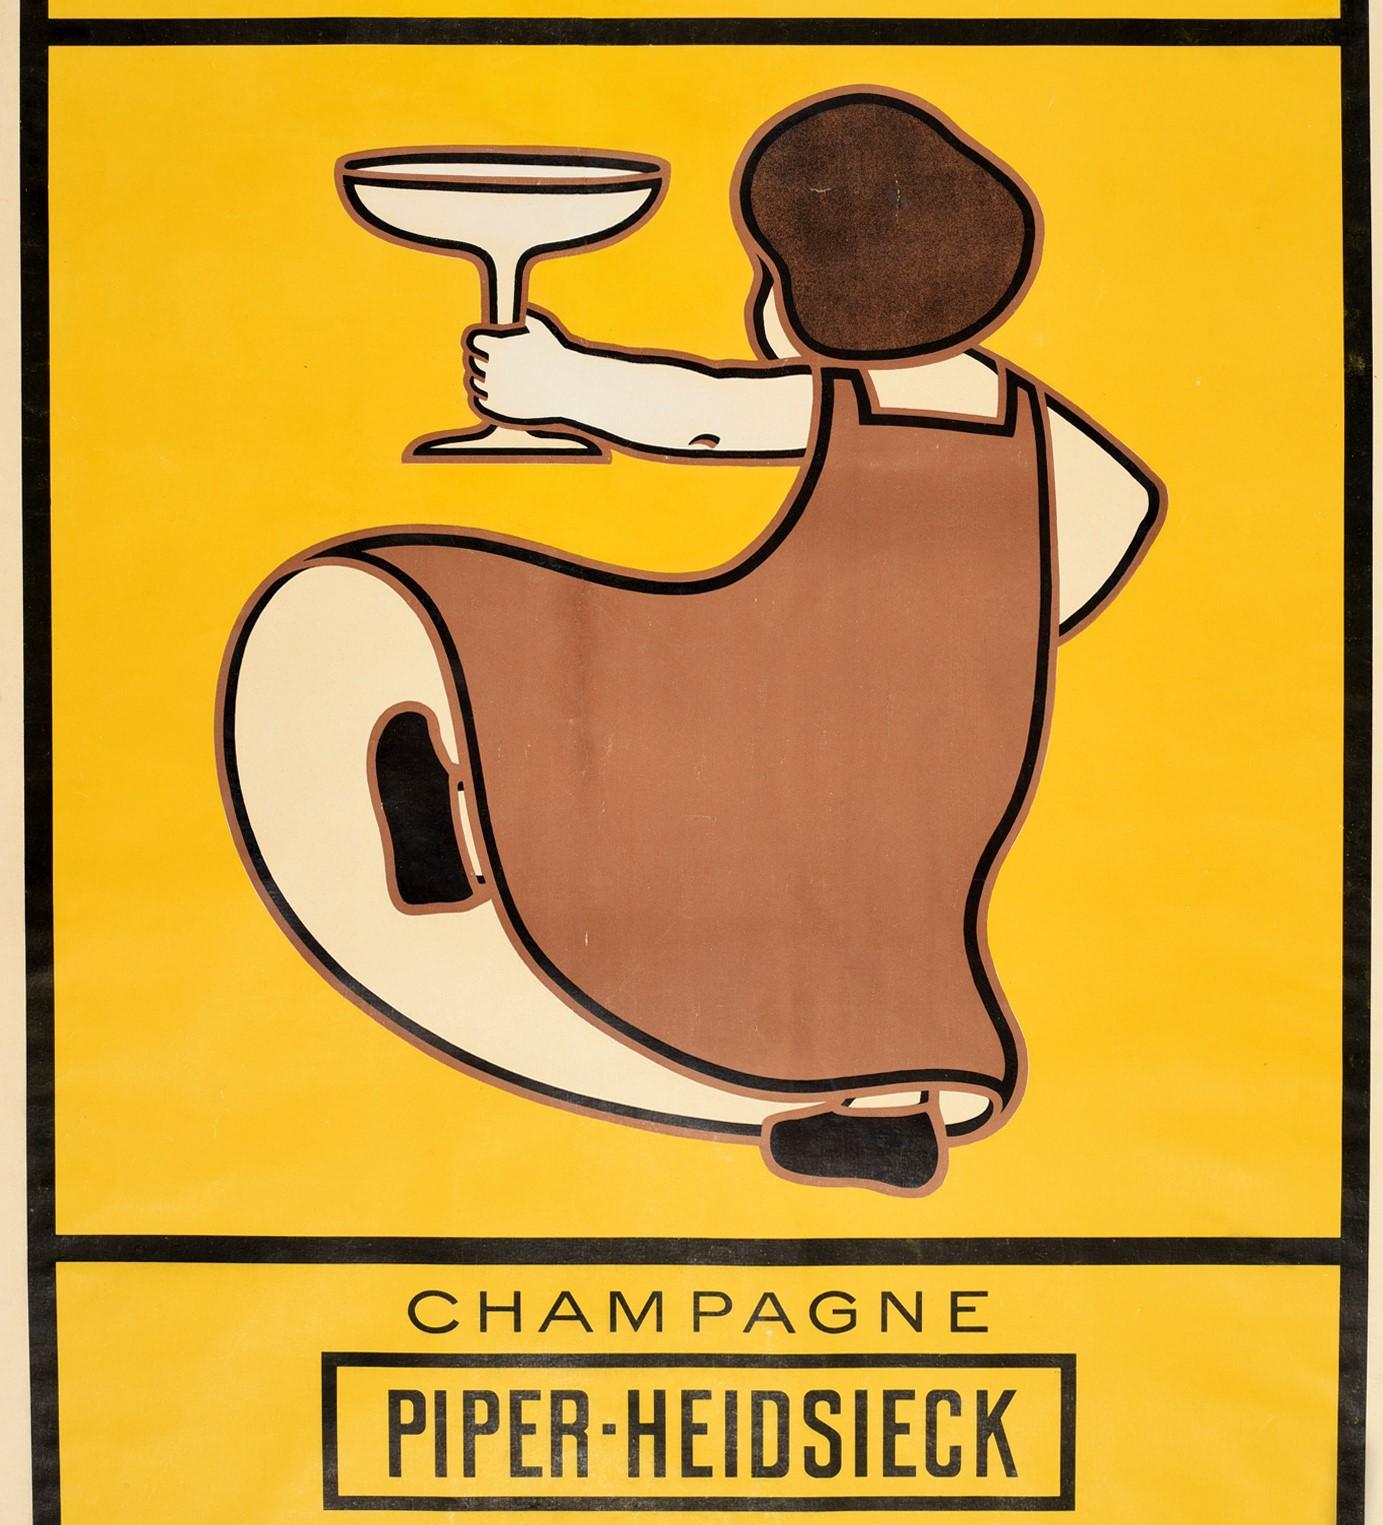 Originales antikes Werbeplakat für alkoholische Getränke für Piper-Heidsieck Champagner mit einem großartigen Design einer Dame, die ein großes Glas Champagner vor einem gelben Hintergrund hält, mit dem fetten Schriftzug über und unter den